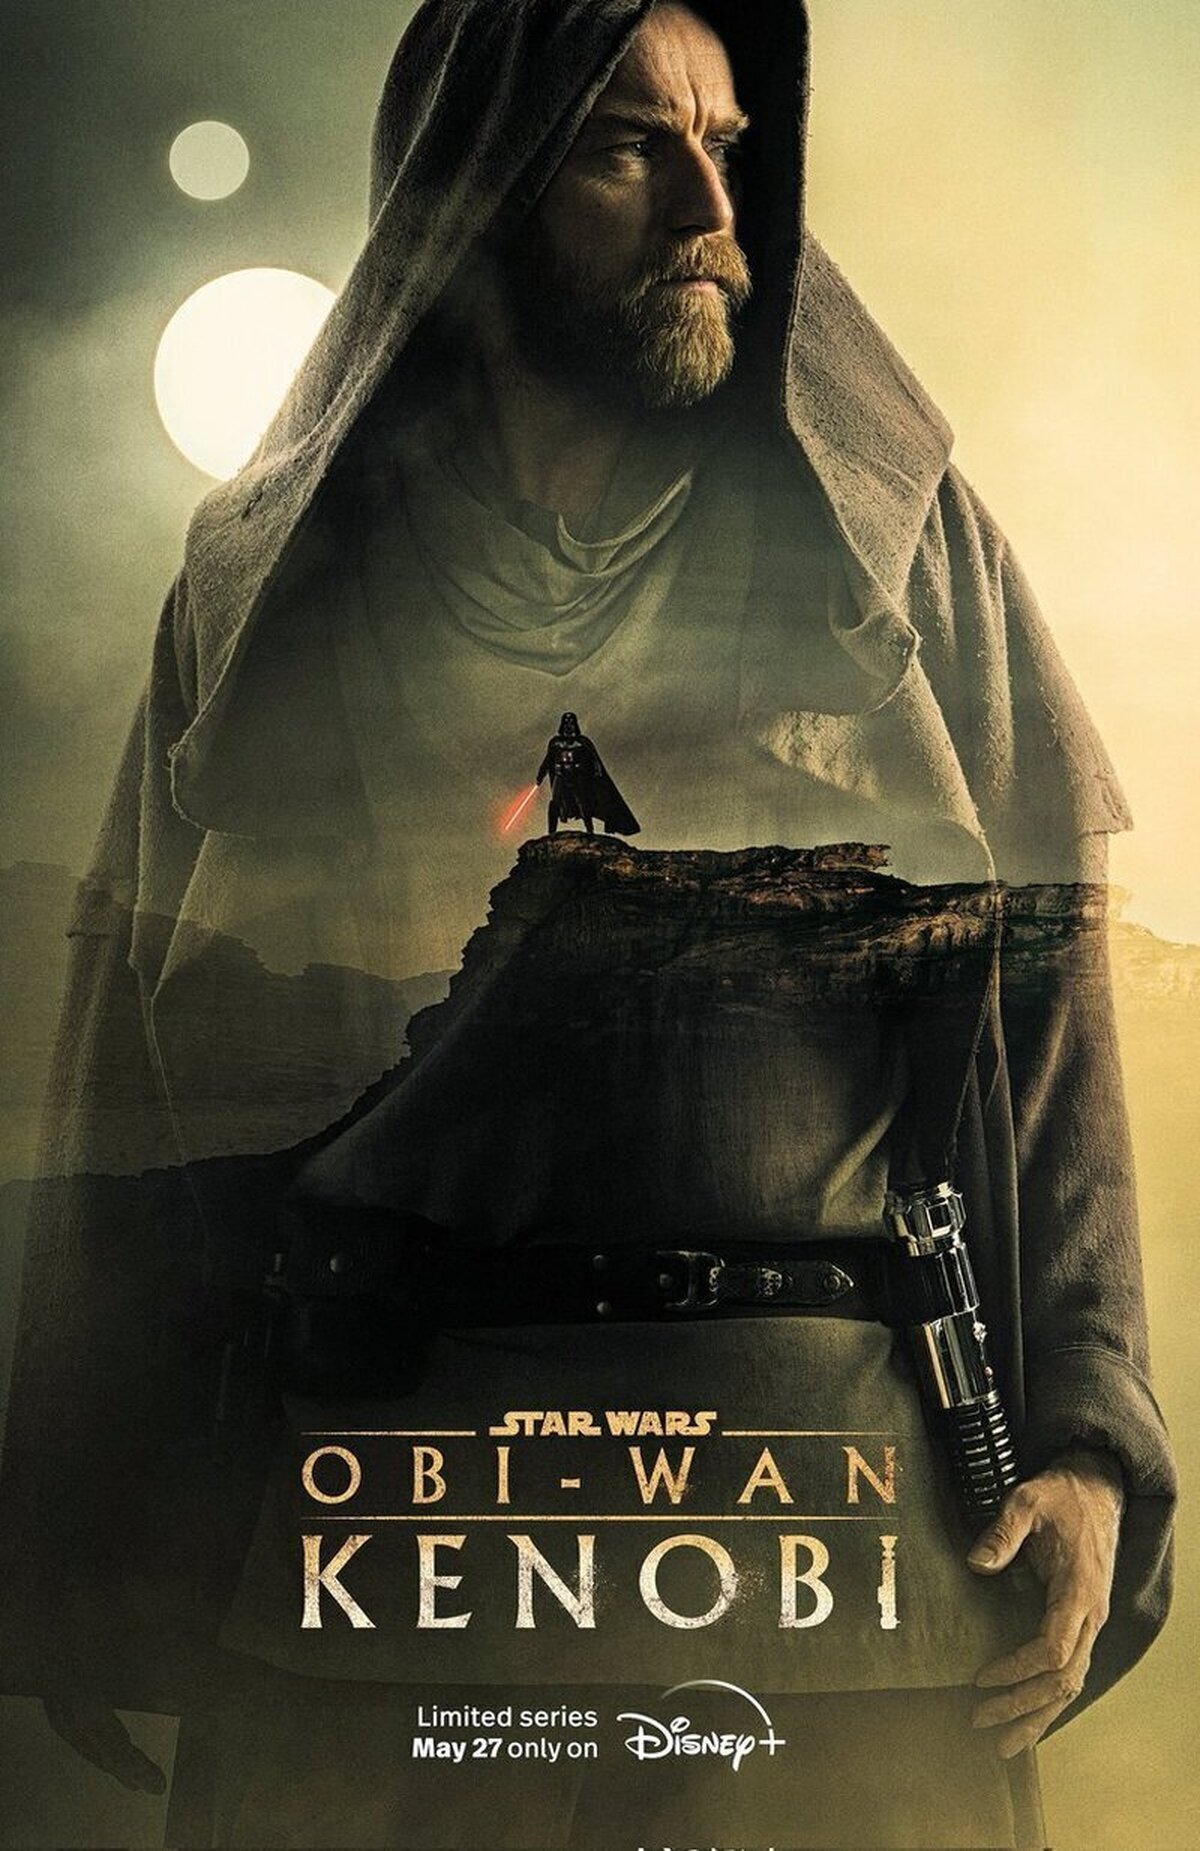 La ola negativa que ha arrastrado la serie de Obi-Wan jamás la entenderé, tiene muchas virtudes.  